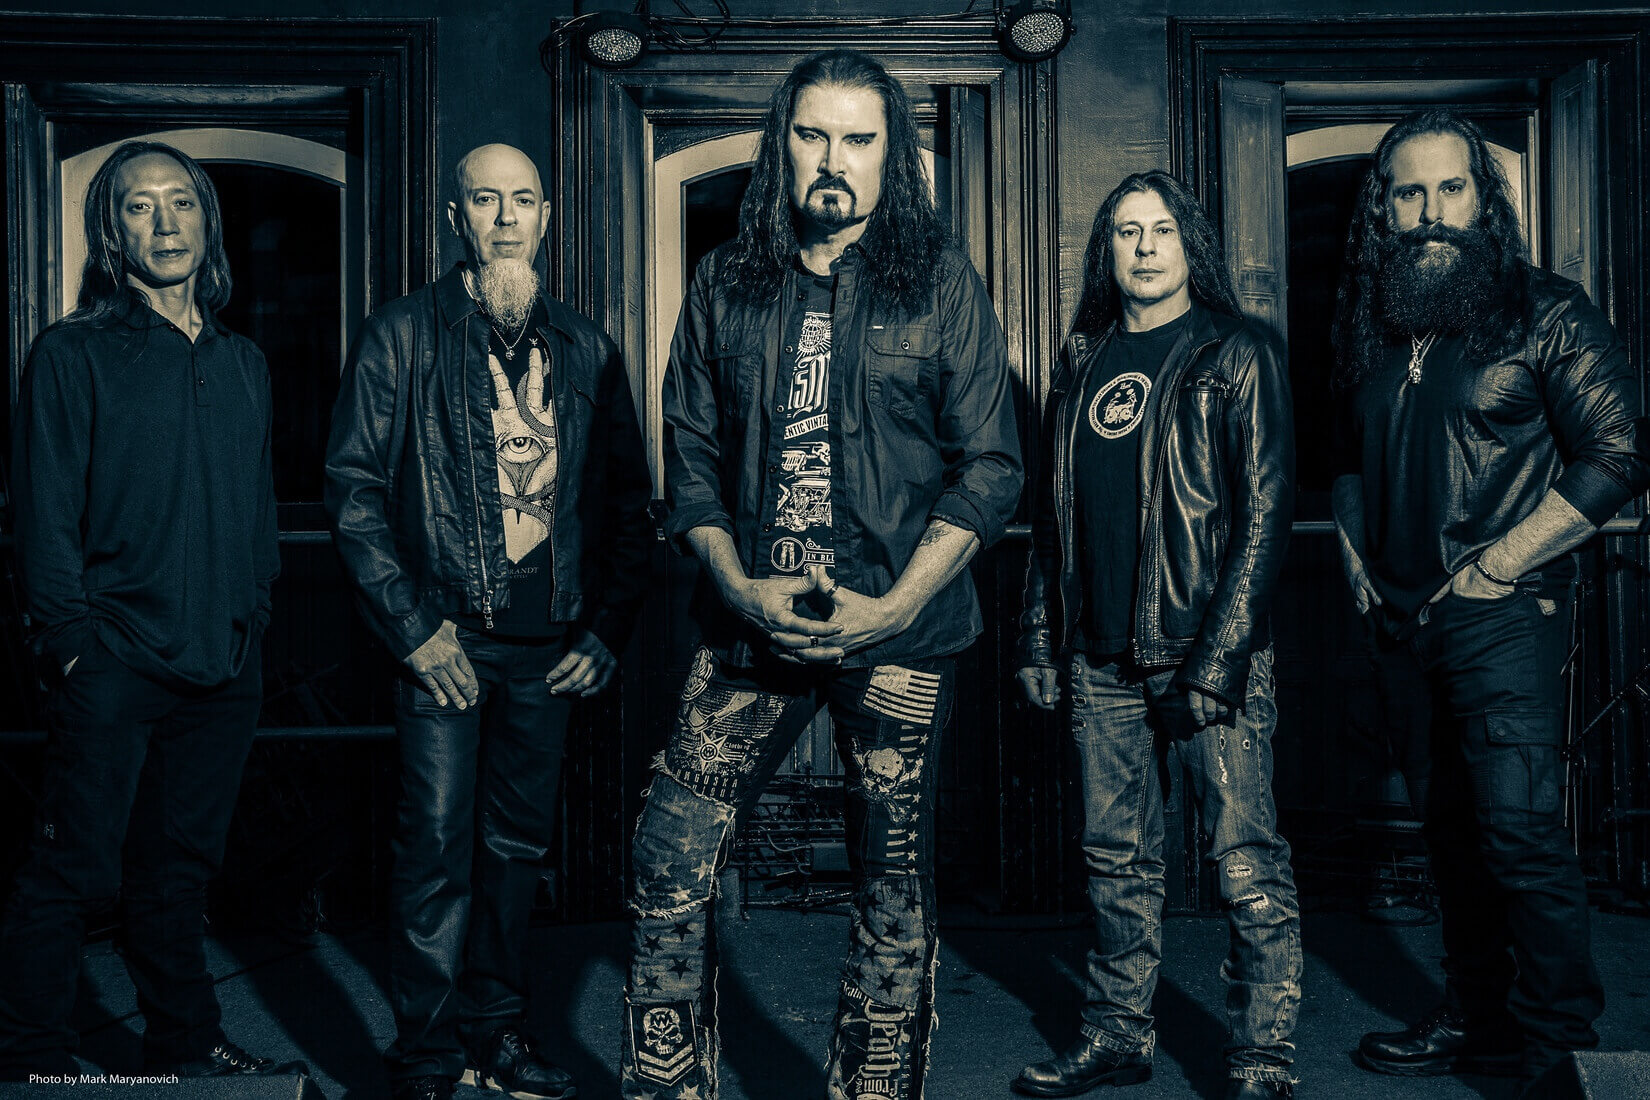 Dream Theater - Дискография (1989-2019) MP3 / FLAC Скачать Торрент